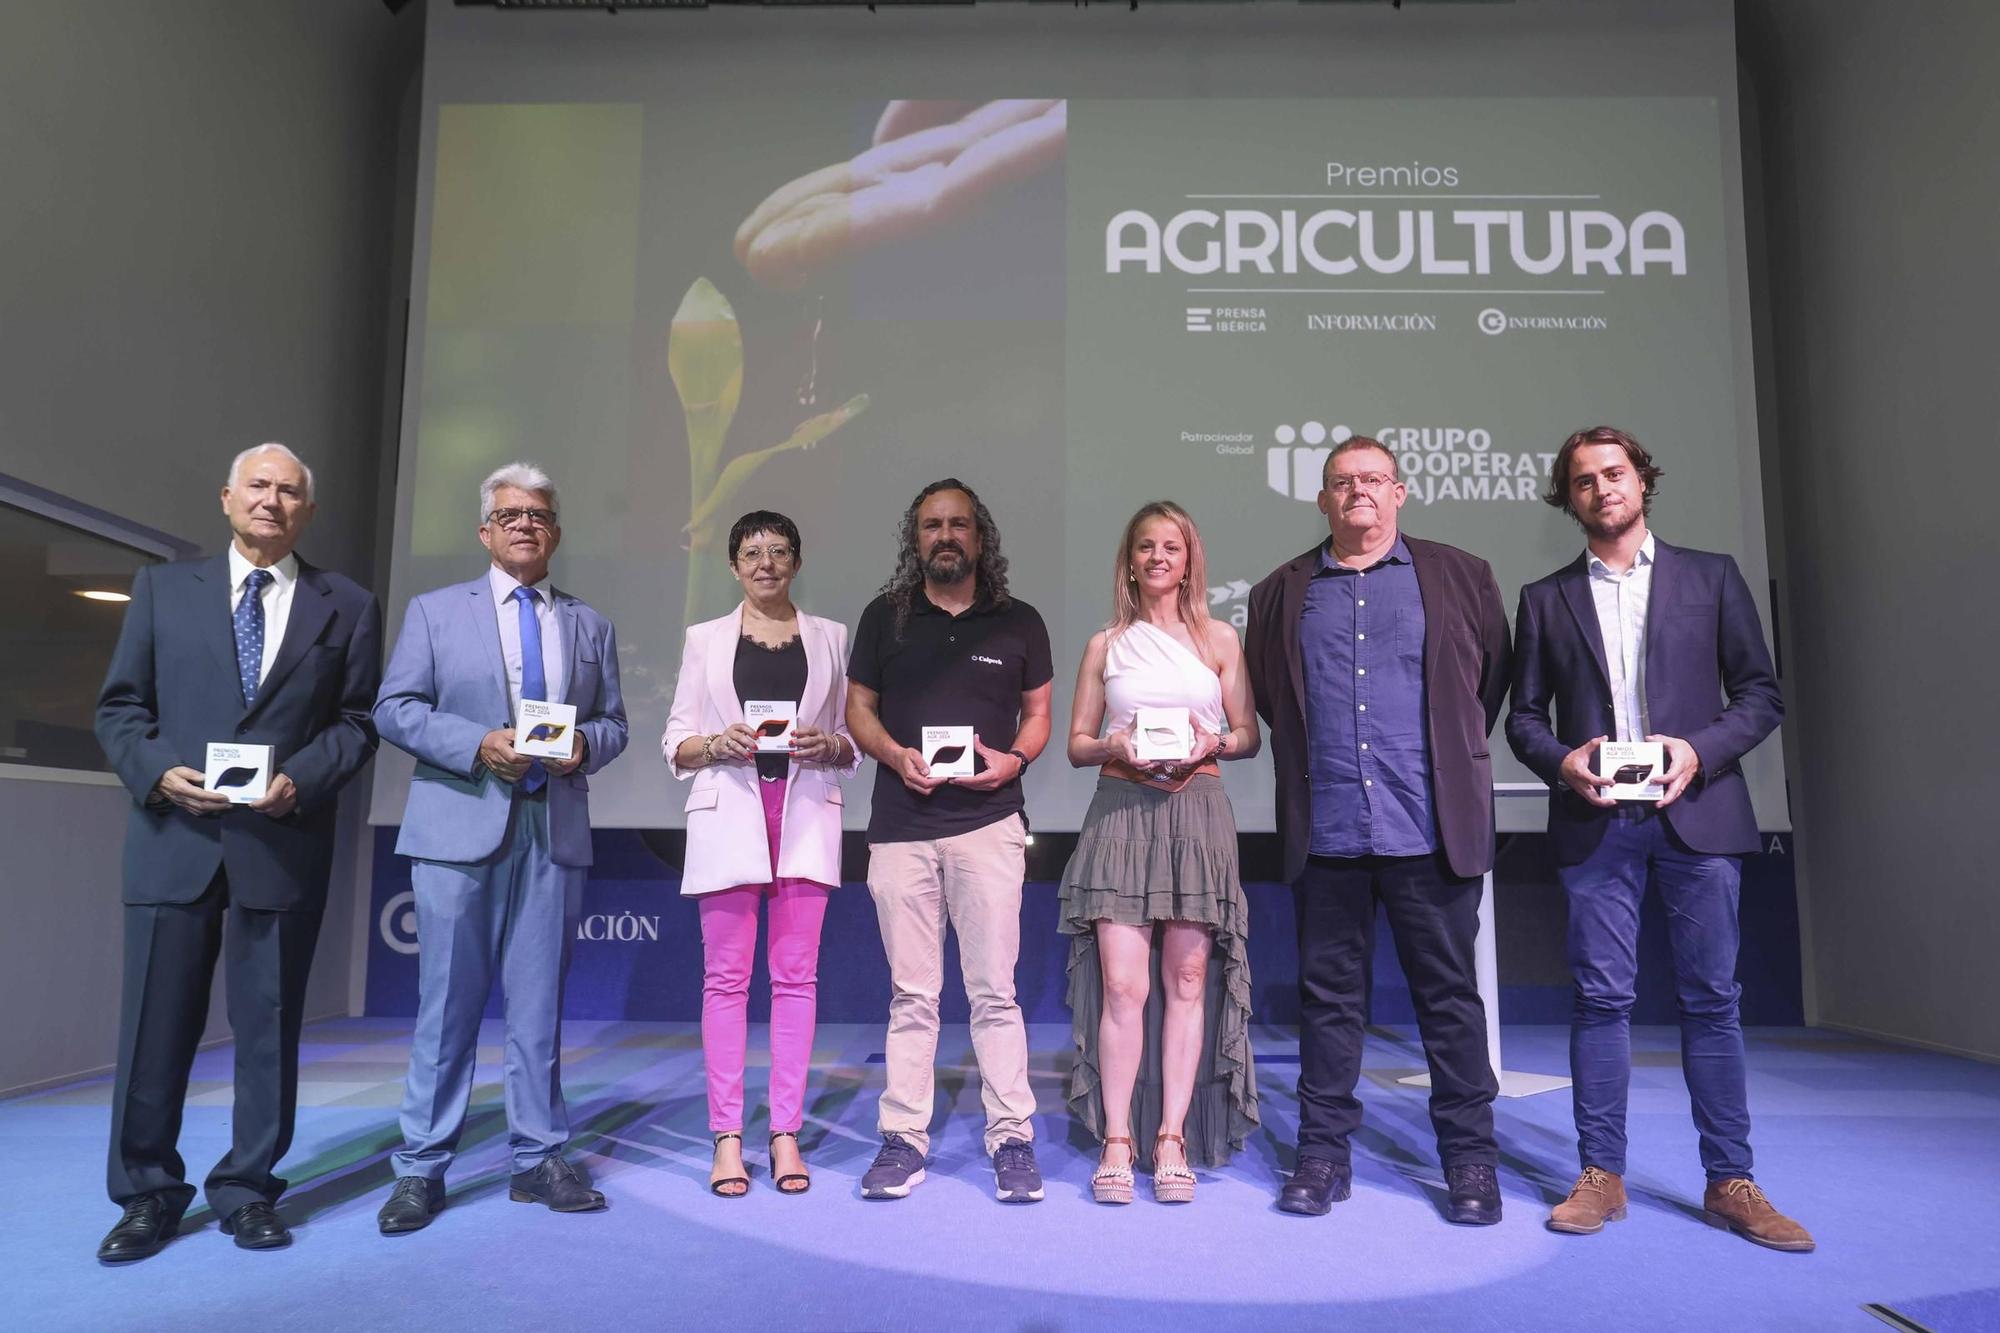 Así ha sido la primera edición de los Premios Agricultura de INFORMACIÓN